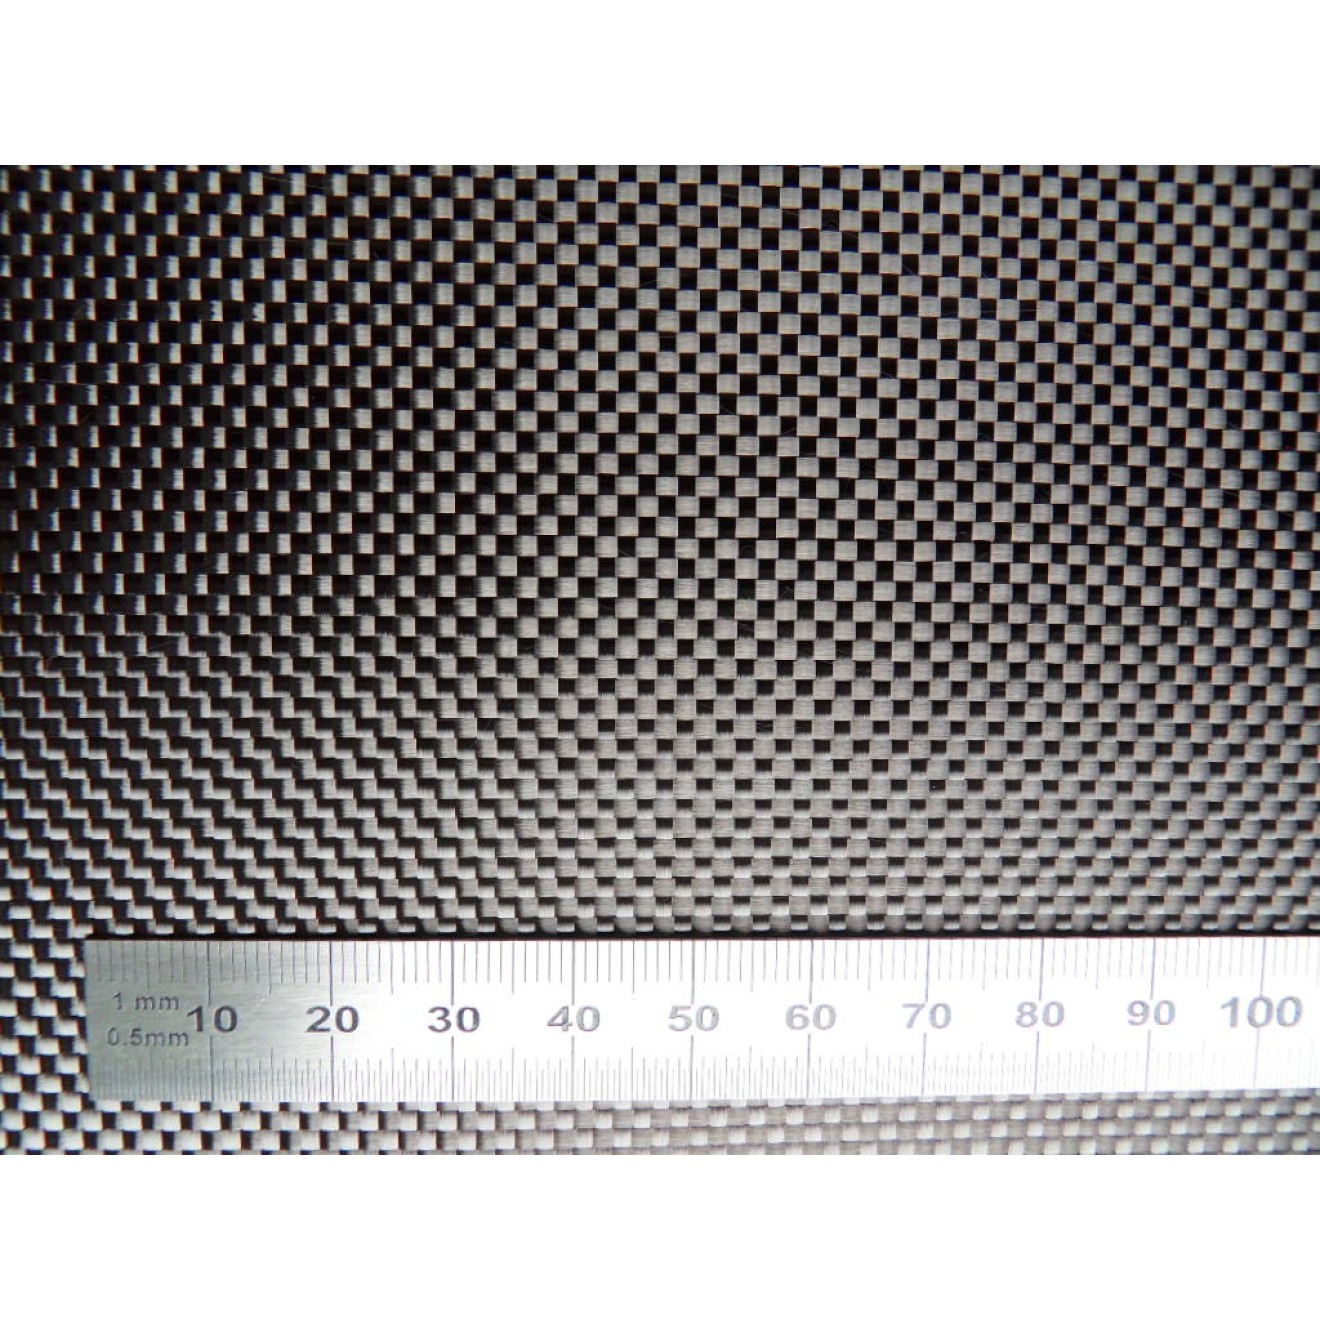 Woven carbon fiber fabric 3K 245g/m² plain weave